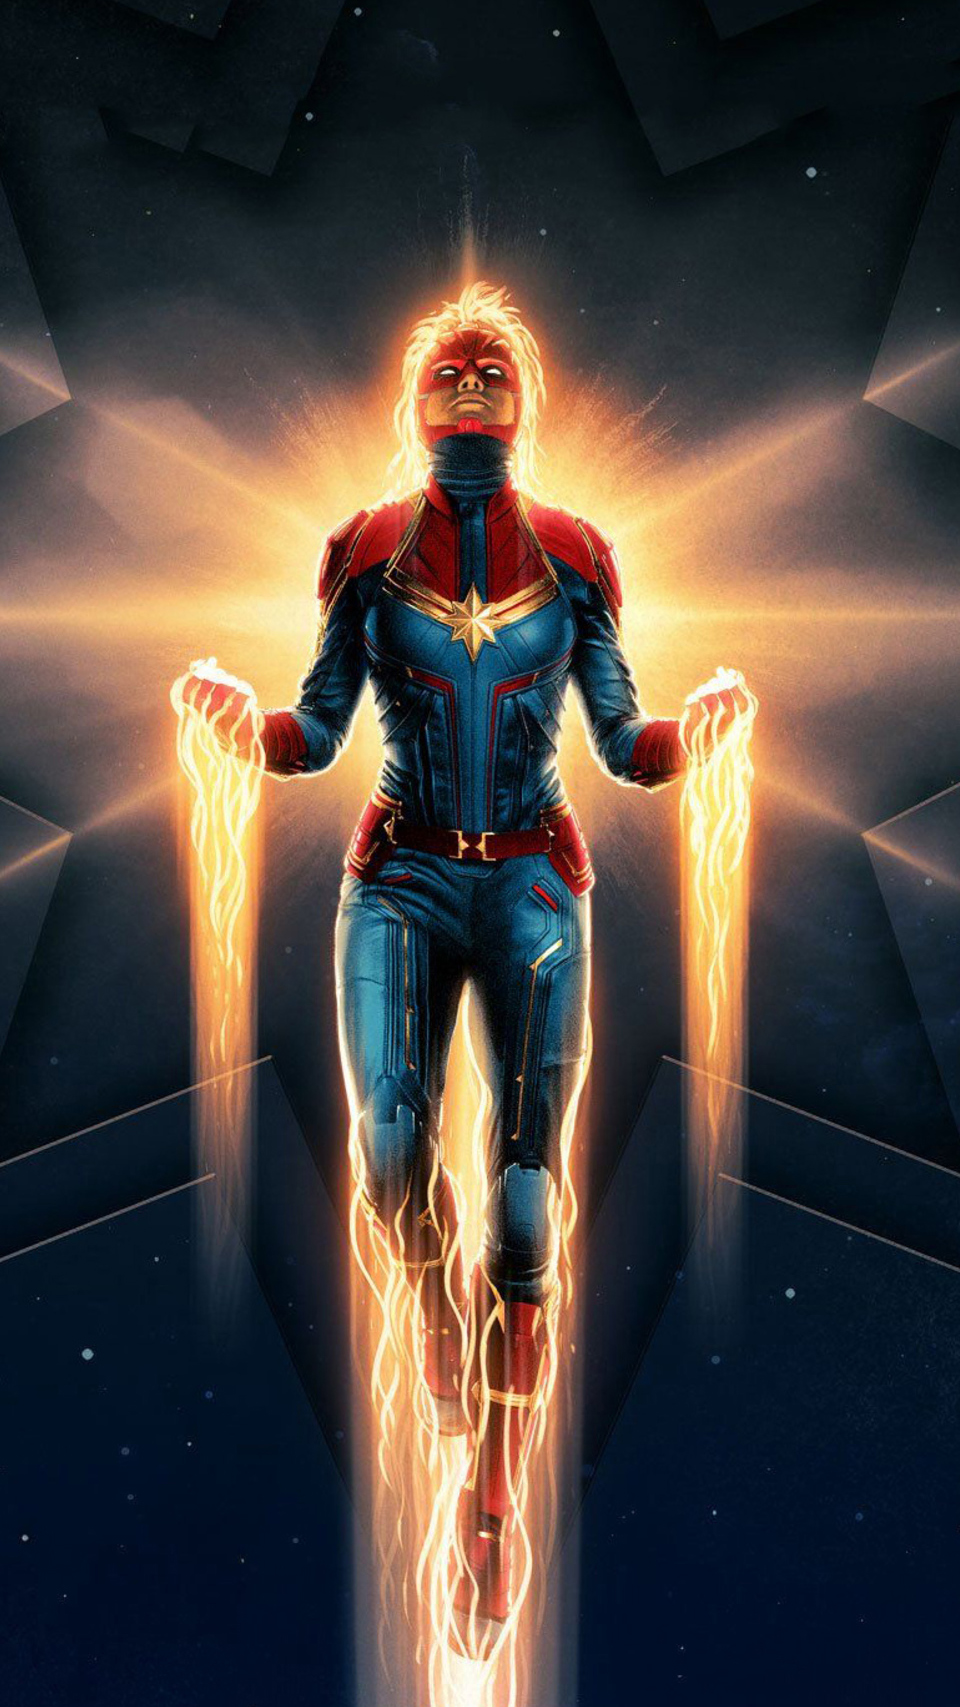 Captain Marvel - nhân vật siêu nữ có sức mạnh phi thường trong Vũ trụ Điện ảnh Marvel. Hãy chiêm ngưỡng những hình ảnh đầy năng lượng và sức mạnh của Captain Marvel, một chiến binh không ngừng chiến đấu vì sự tự do và công bằng.